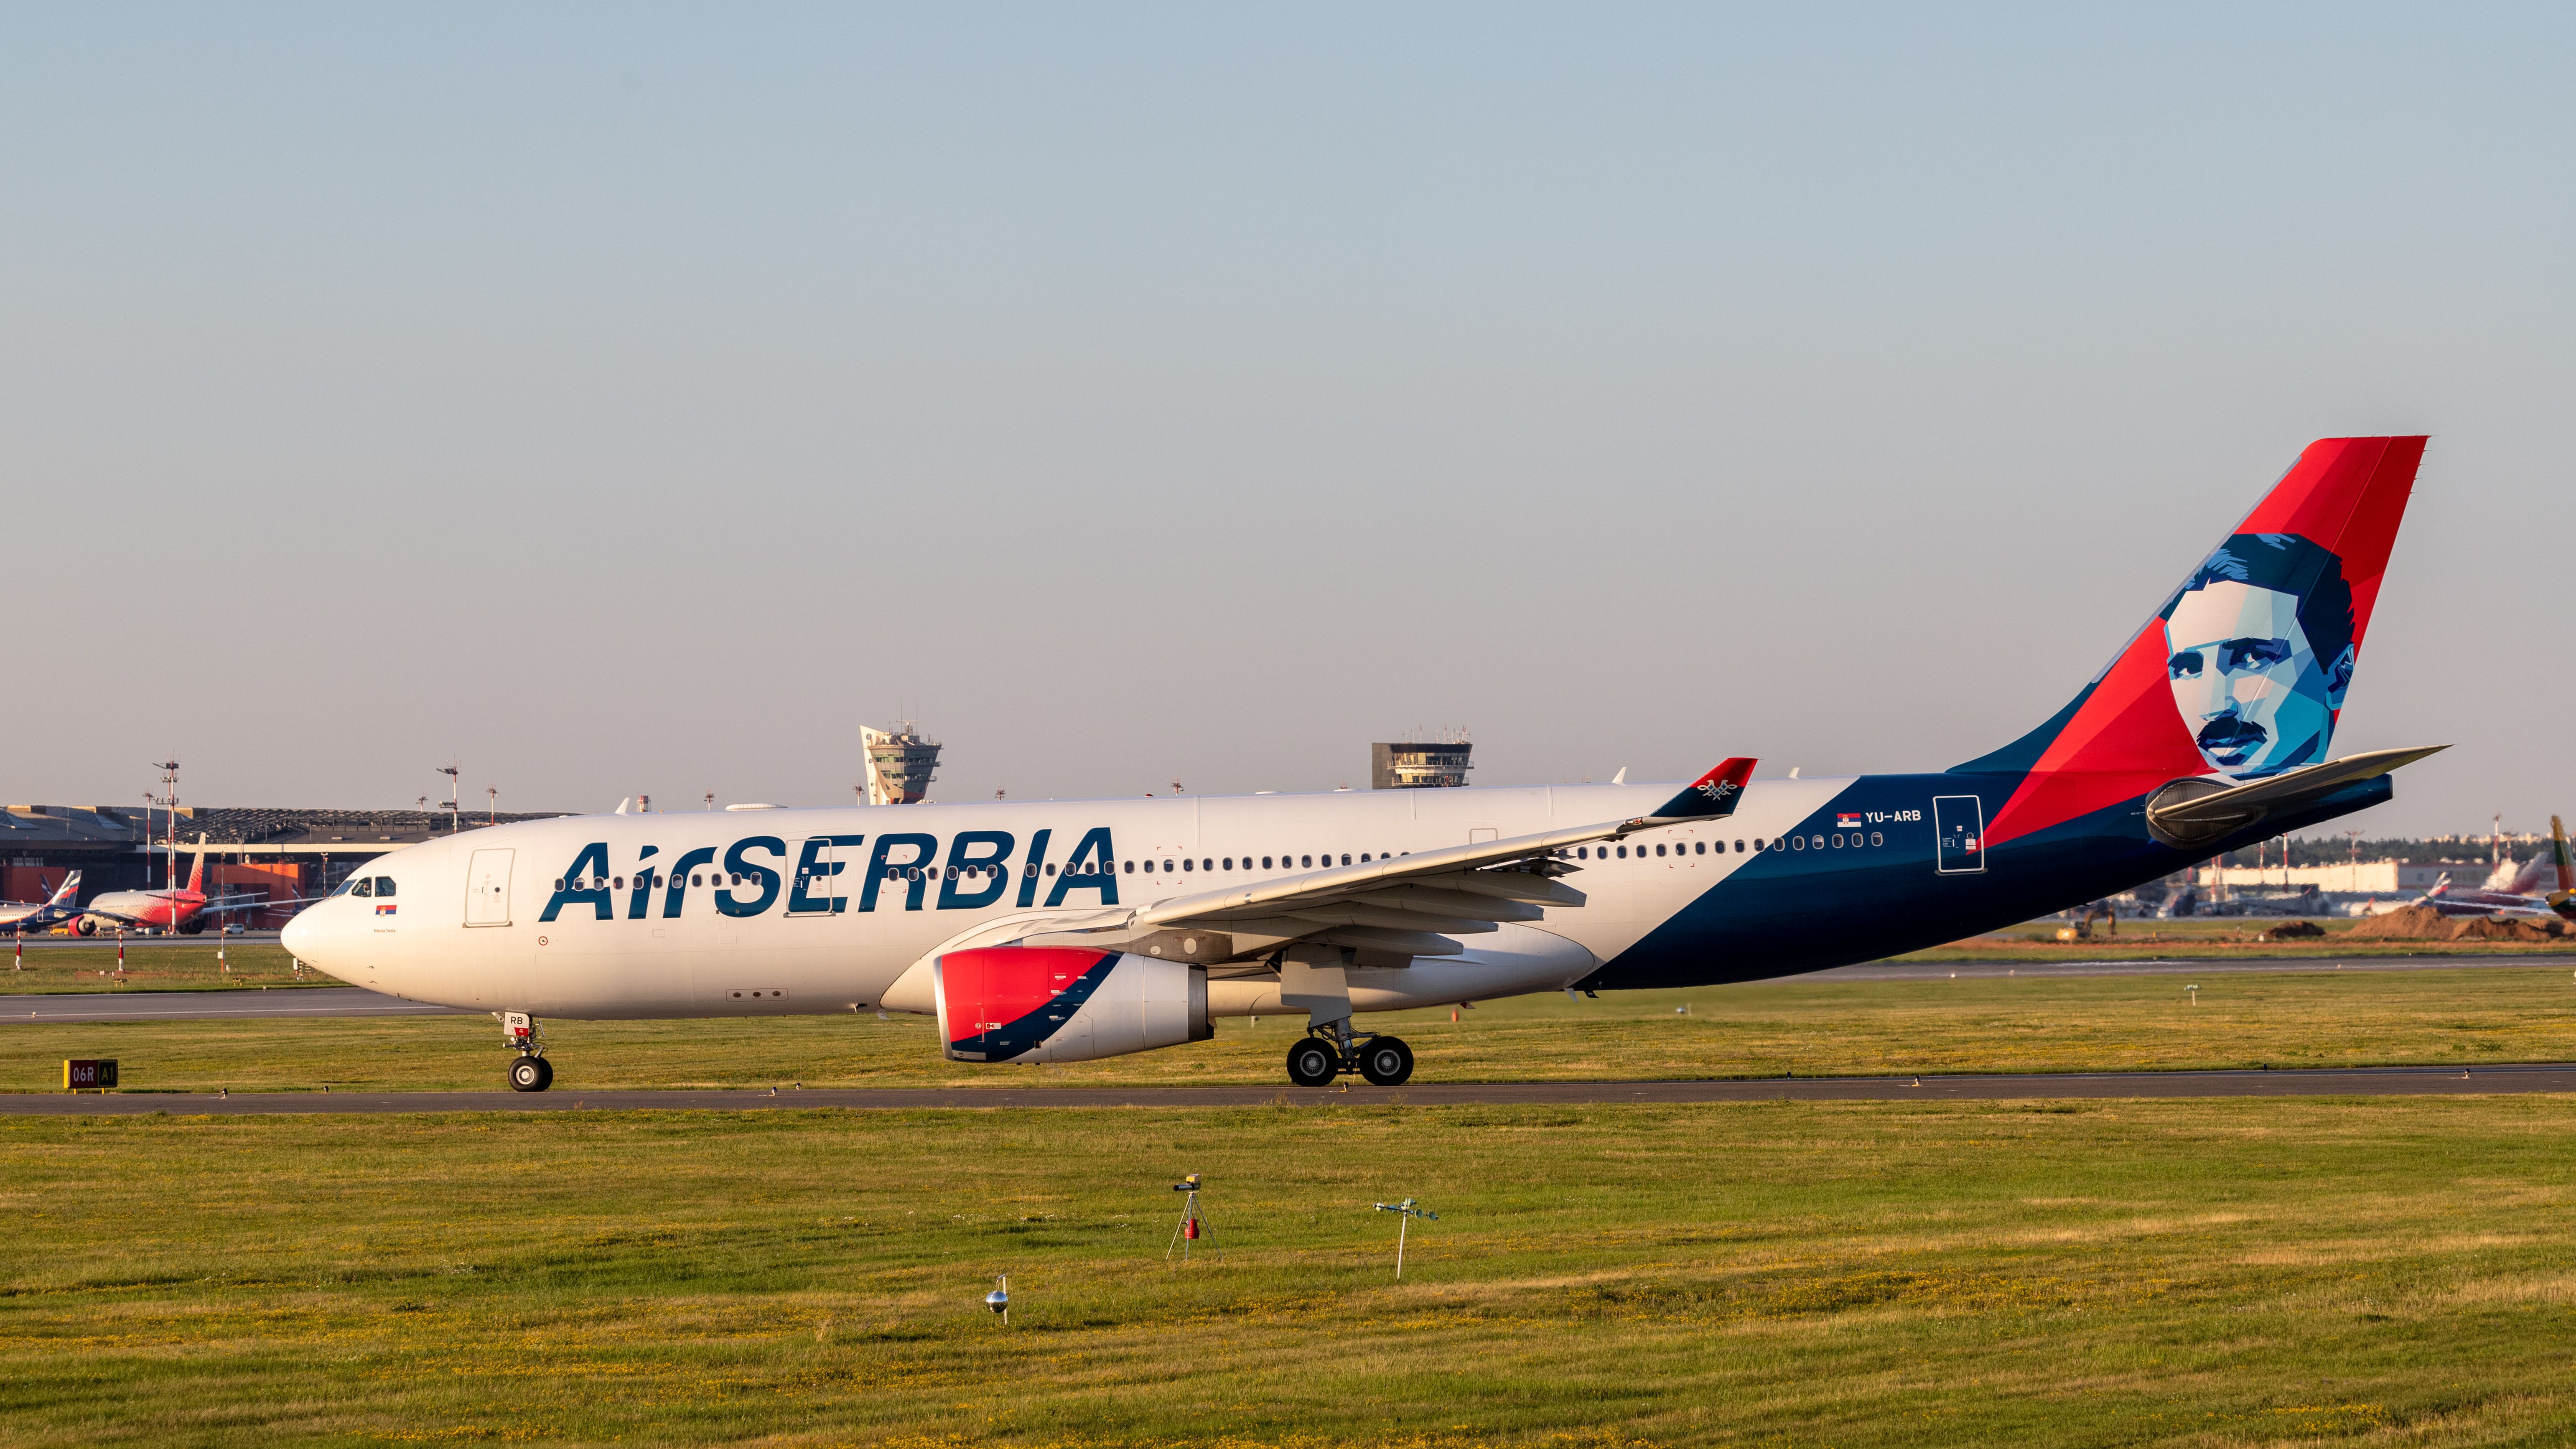 An Air Serbia Airbus A330